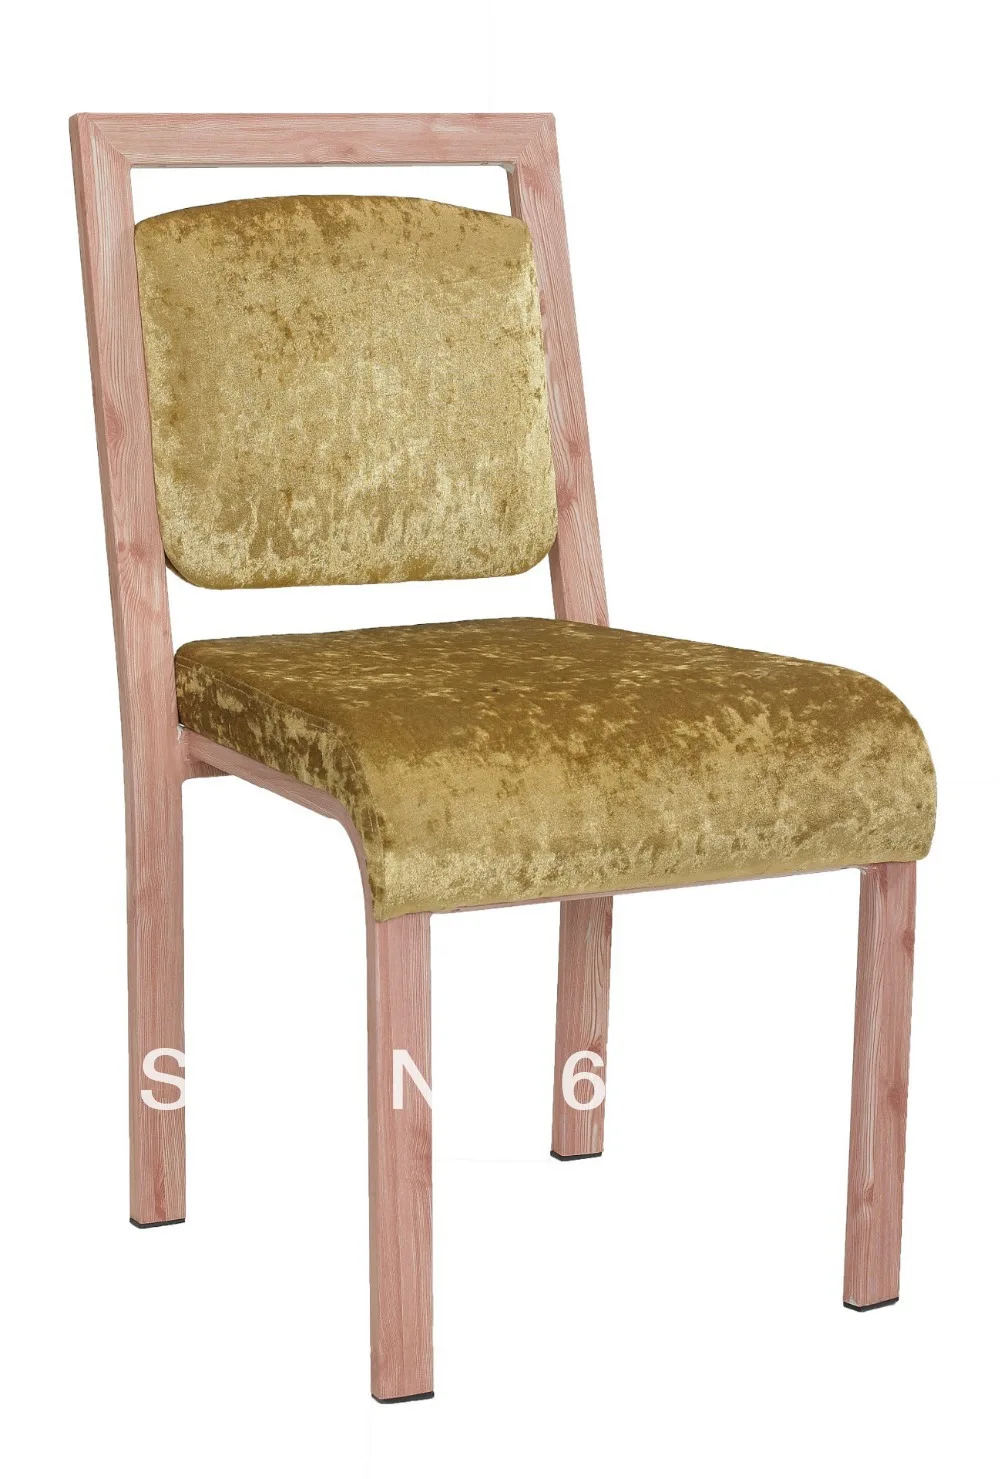 Стекируемые текстура древесины Алюминий стул банкета, прочная ткань с высокой стойкостью к истиранию, удобные